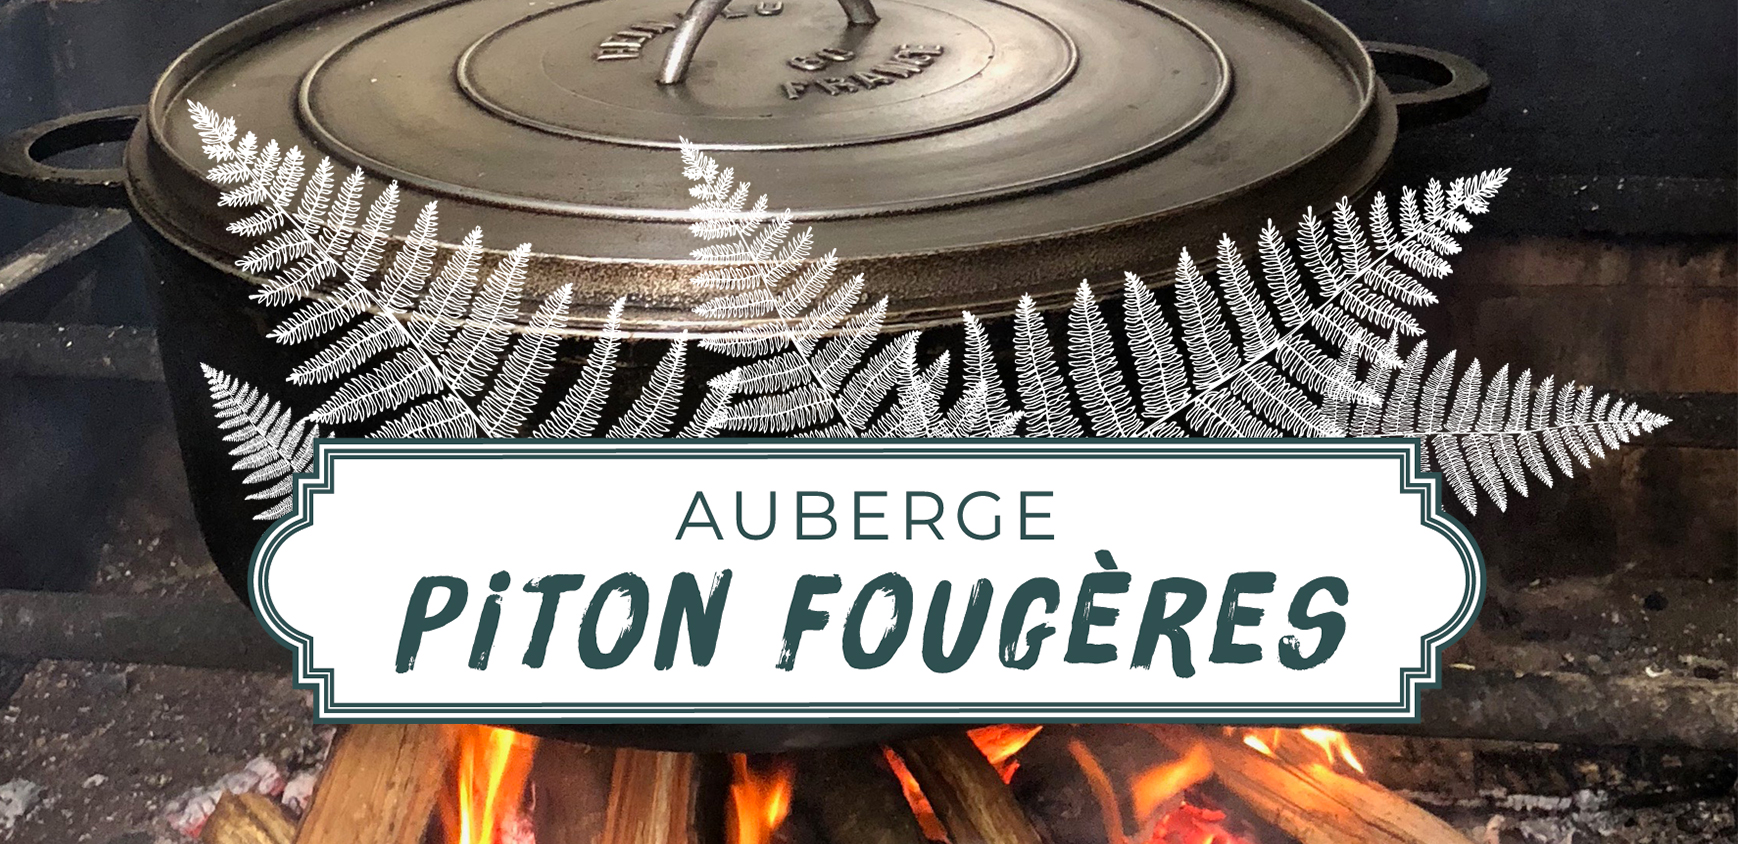 AUBERGE PITON FOUGÈRES